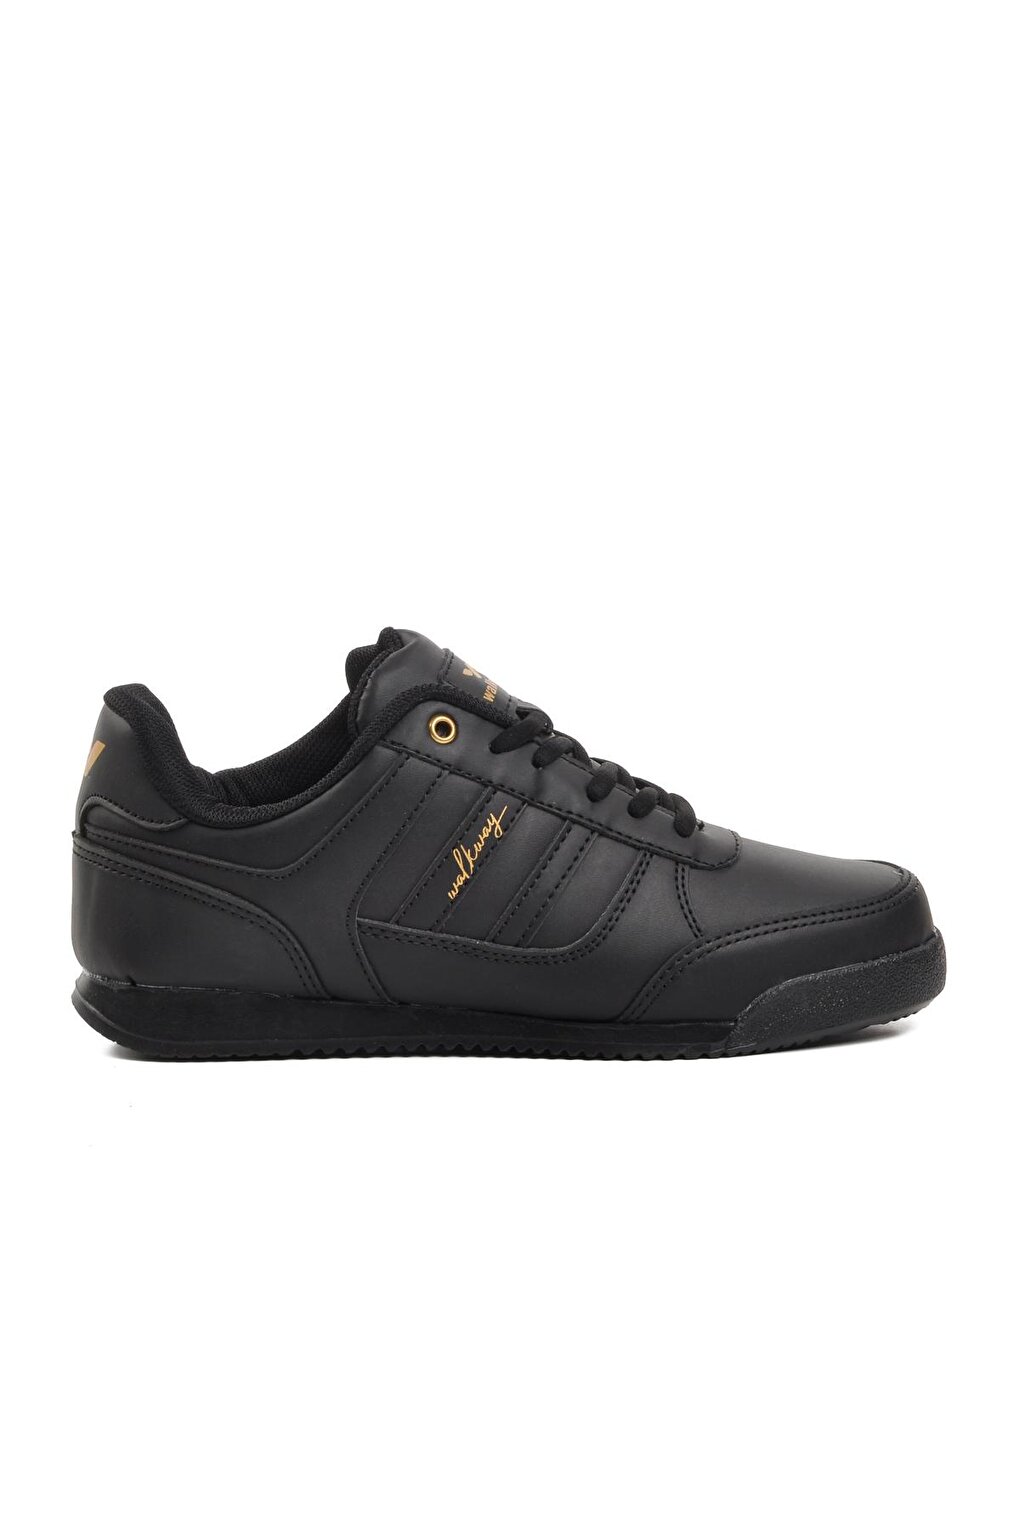 Мужские кроссовки на шнуровке из эффективного полиуретана черного и золотого цвета Walkway черное золото